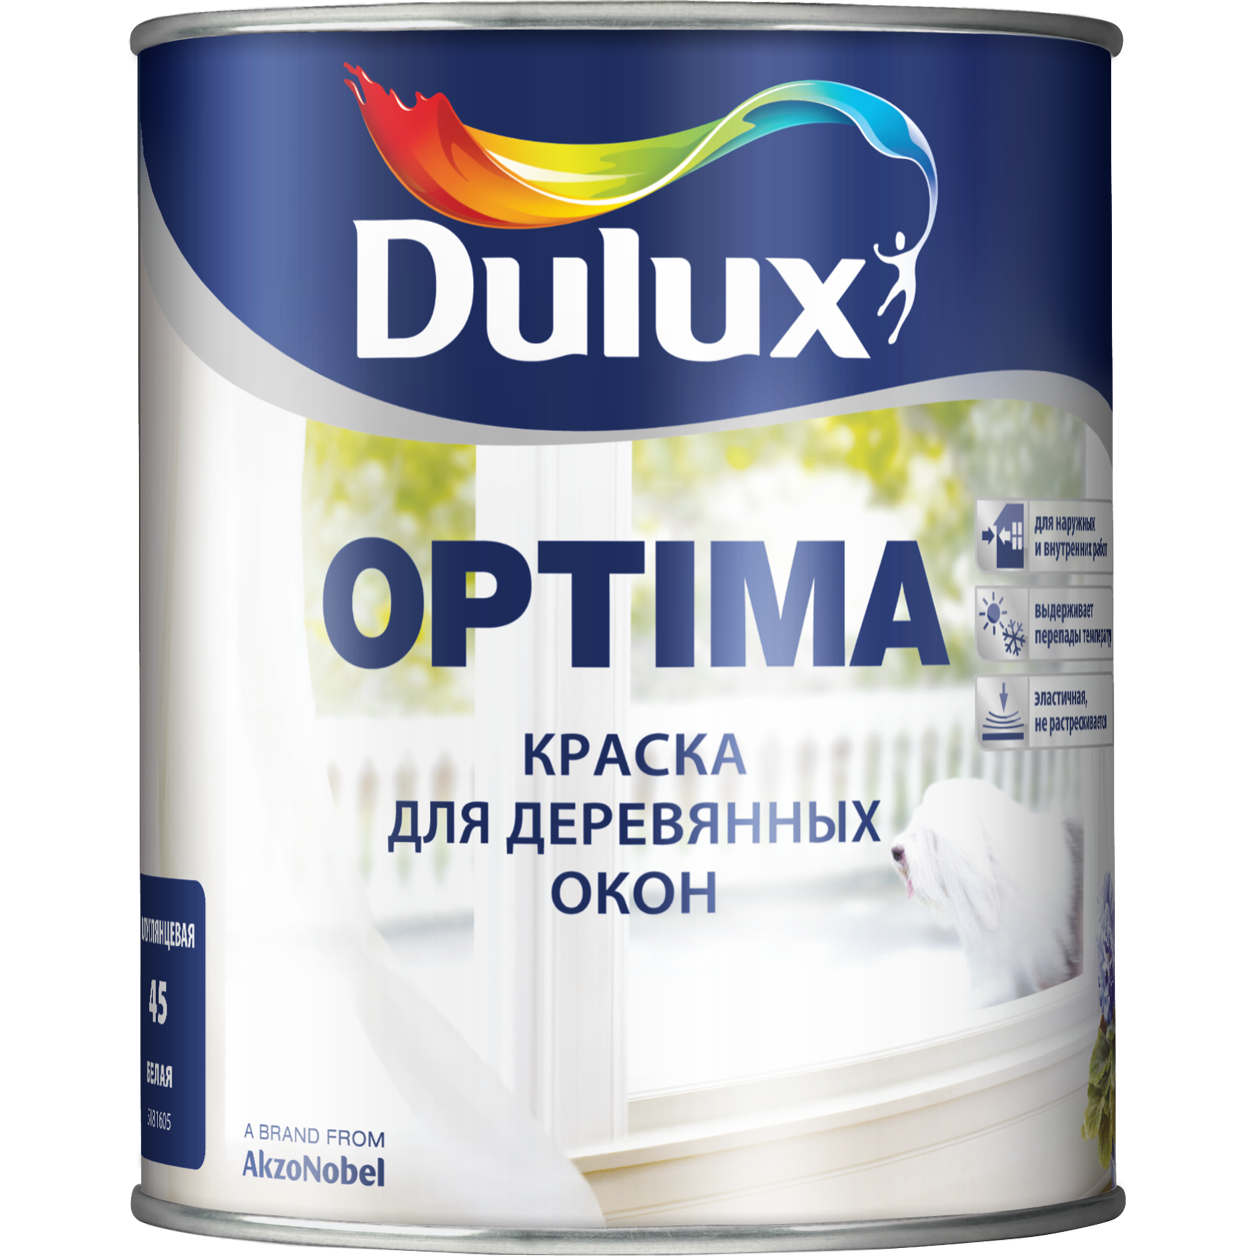 Dulux Optima краска для деревянных окон. Оптима краска эмаль алкидная. Алкидная универсальная эмаль Dulux. Краска алкидная Дулюкс. Краска для комнаты без запаха